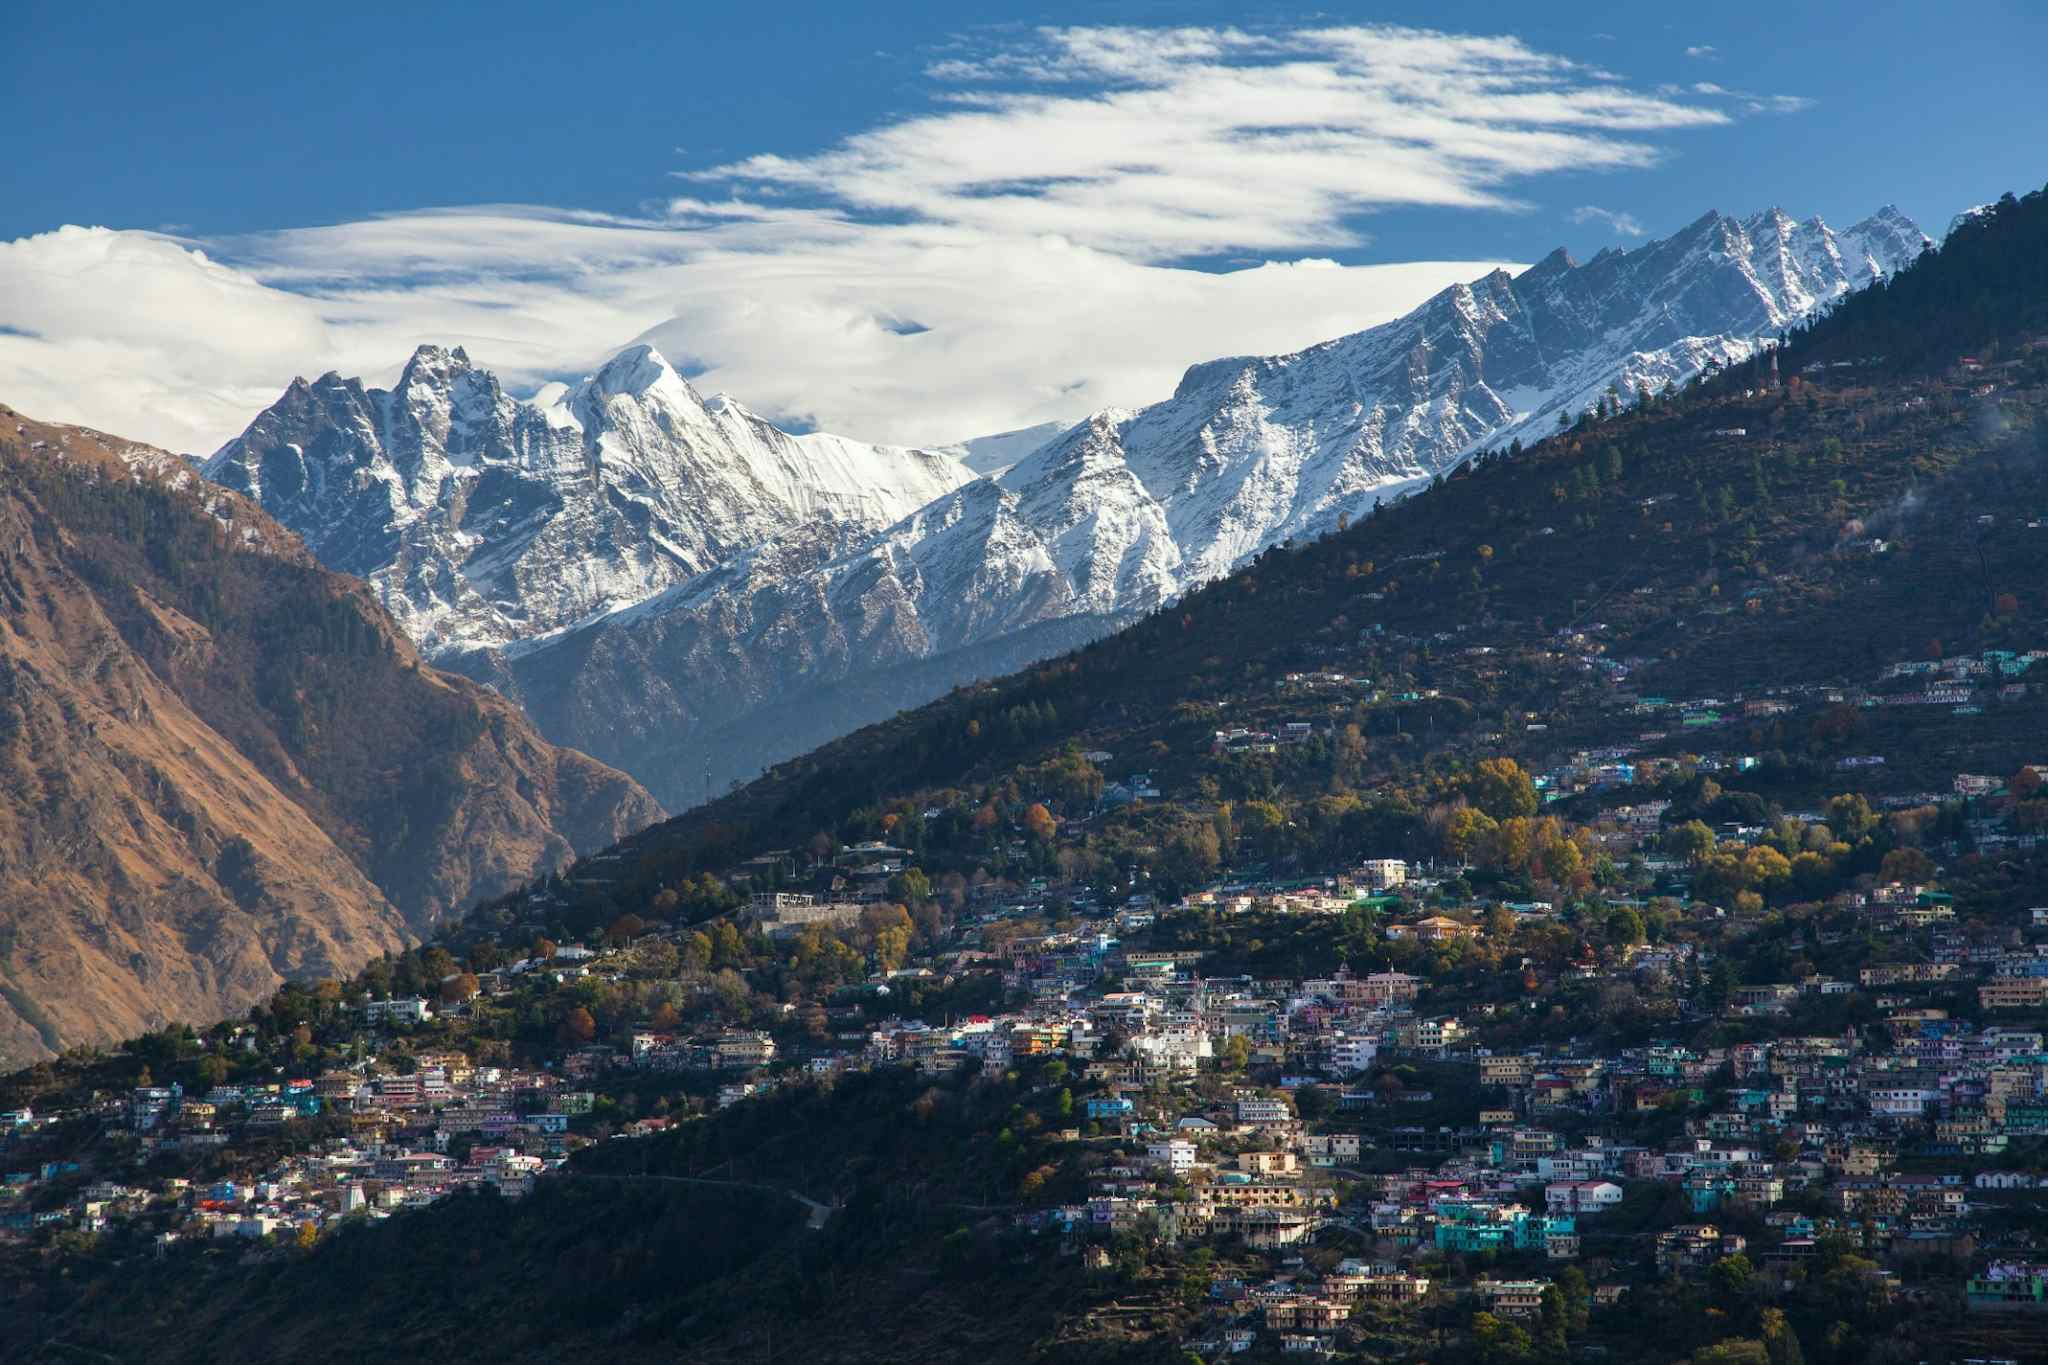 Josimath, Uttarakhand, India - Canva link: https://www.canva.com/photos/MAEwhwJXPU8-joshimath-uttarakhand-india-indian-himalaya-mountain/